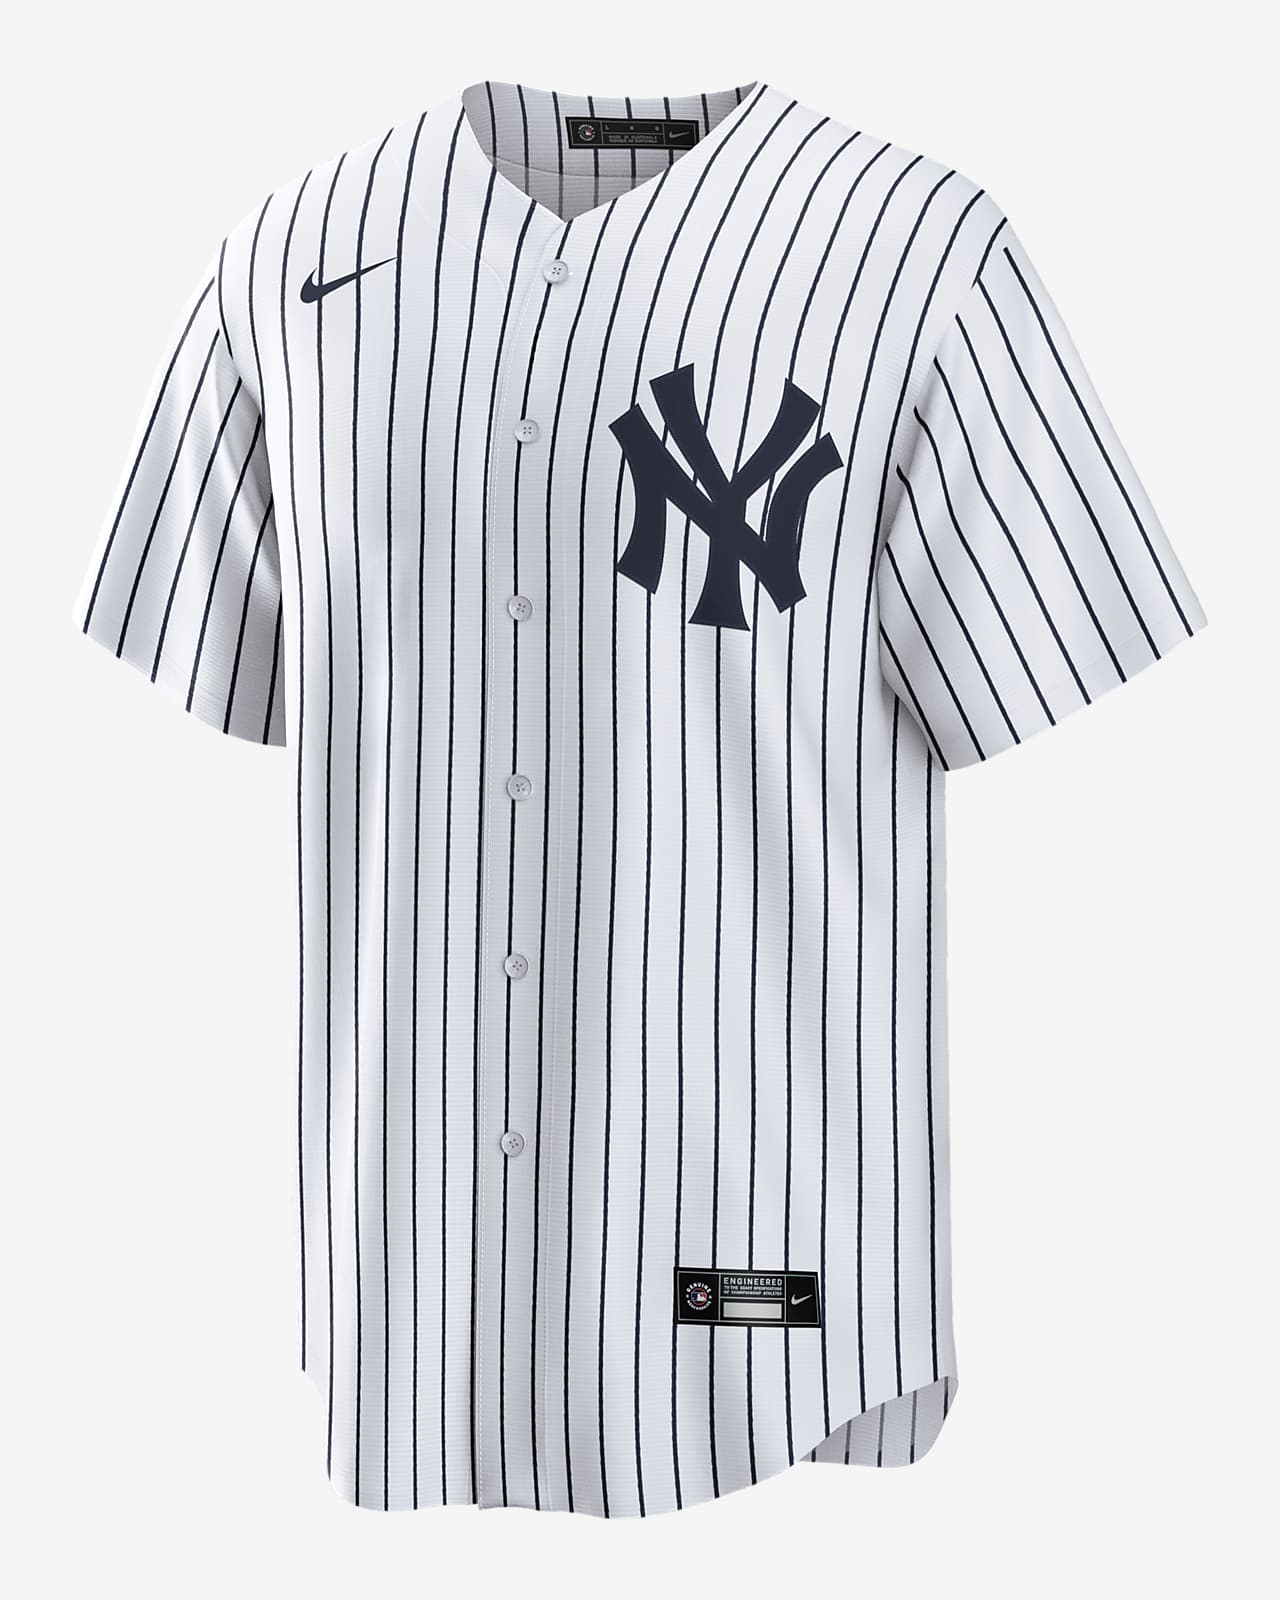 New York Yankees Split Nike Jersey Aaron Judge Navy-Gray Splicing